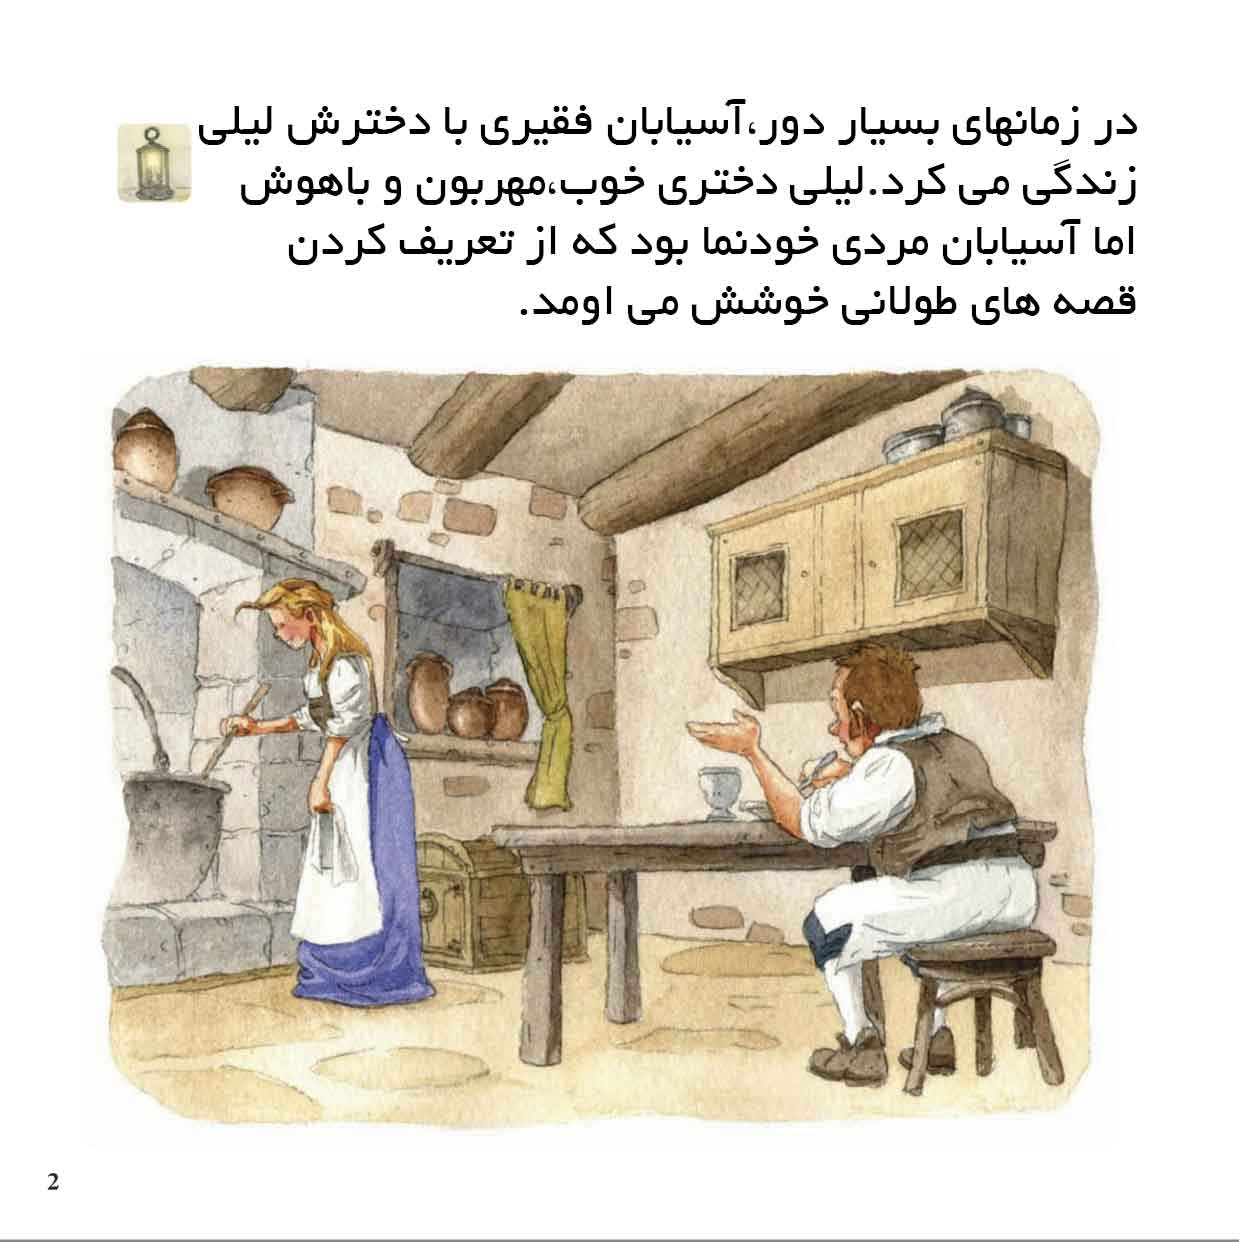 کتاب داستان رامپل استیلت اسکین به صورت مالتی مدیا (نسخه فارسی)